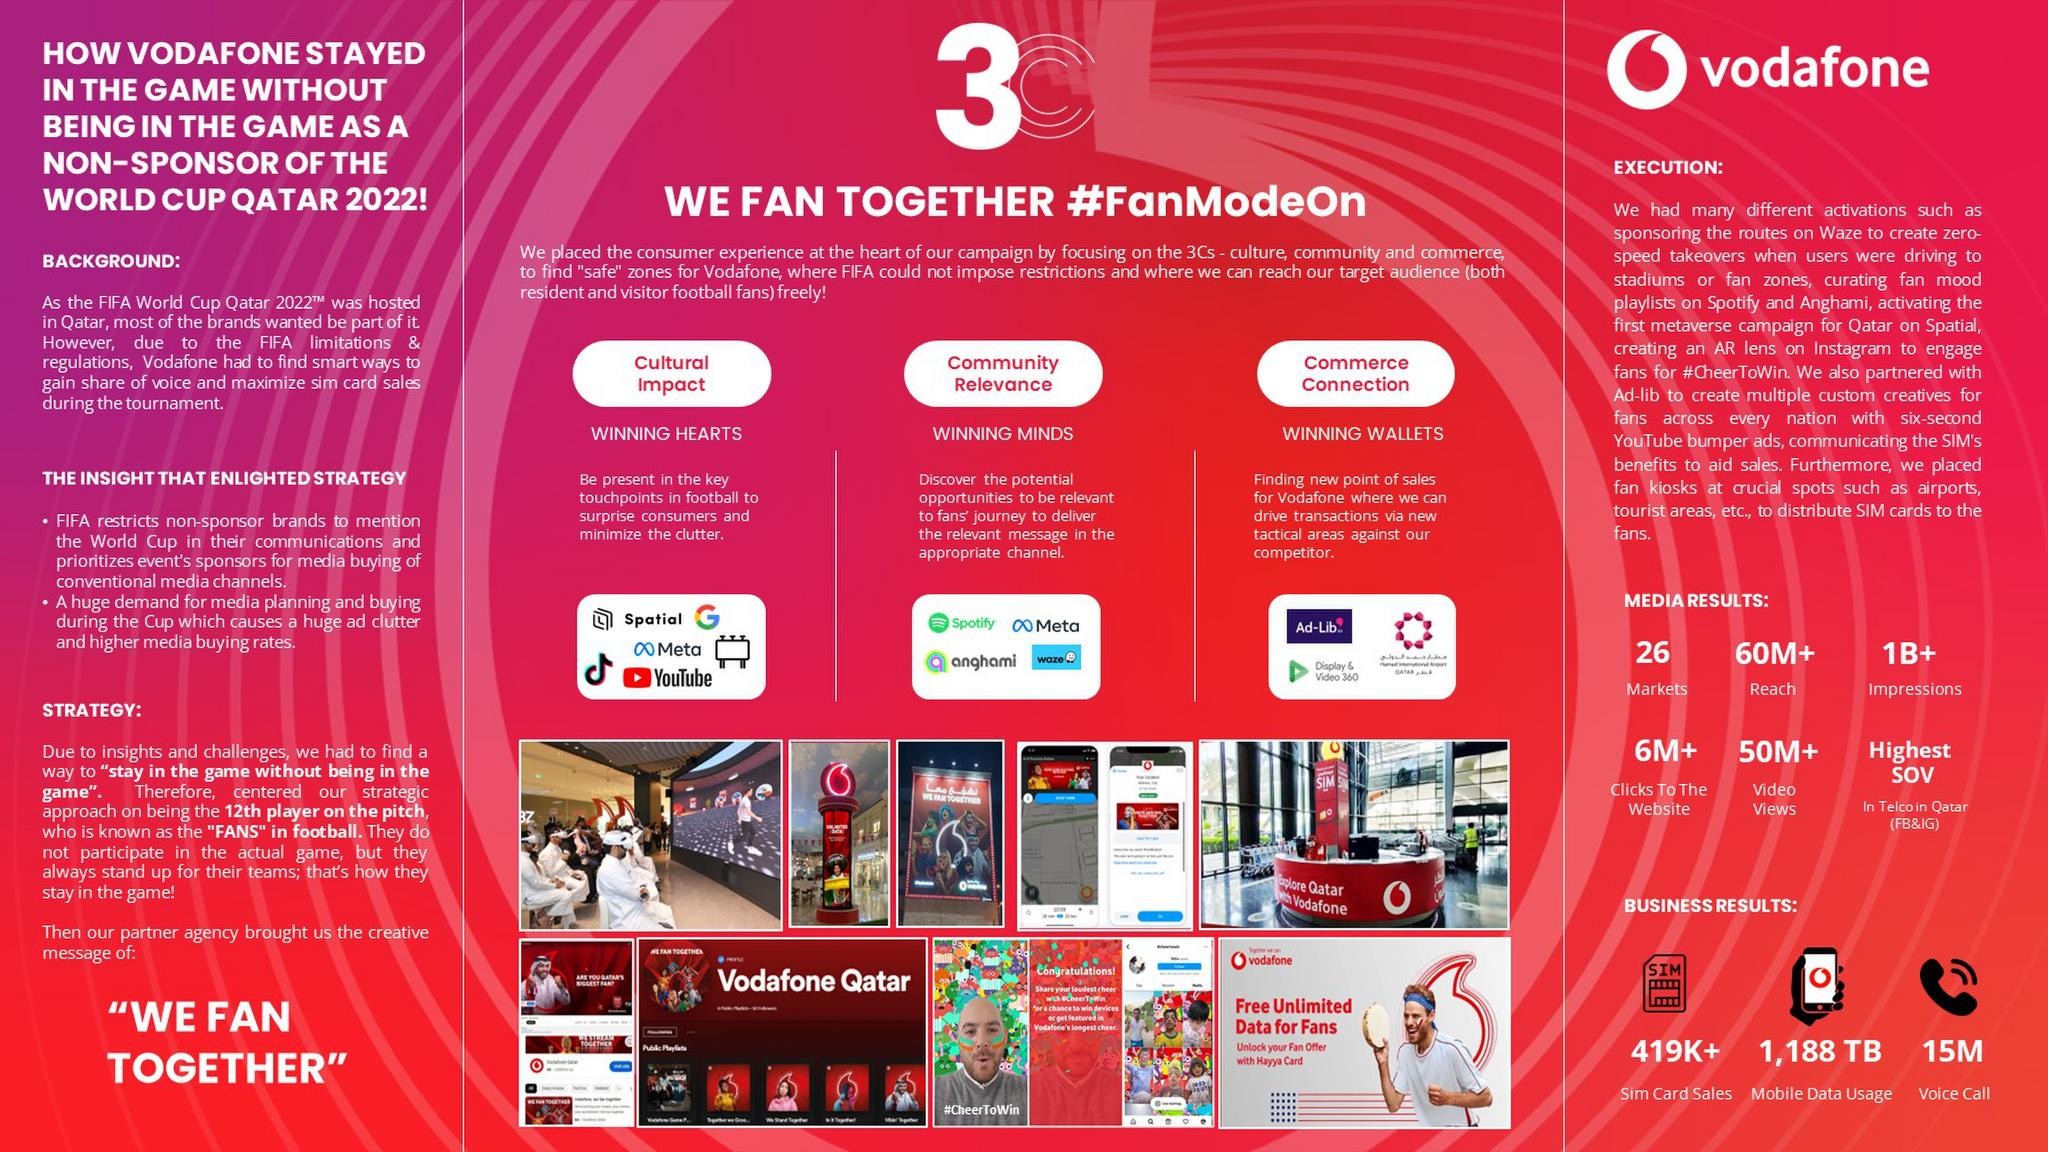 Vodafone - We Fan Together